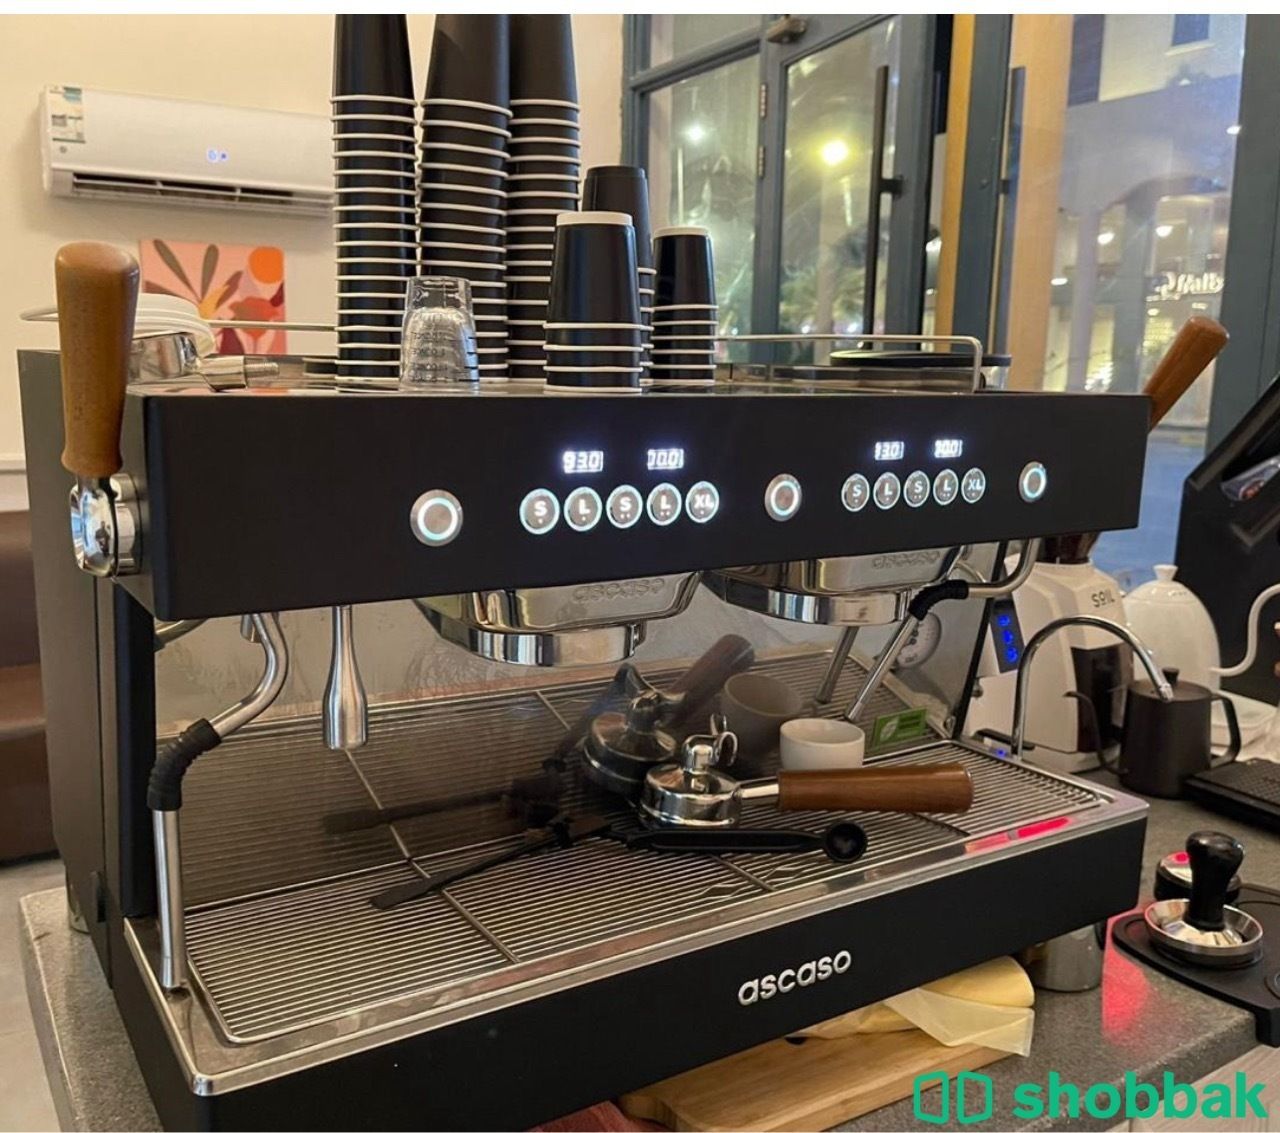 ماكينة قهوة جديدة استعمال اقل من سنة  Shobbak Saudi Arabia